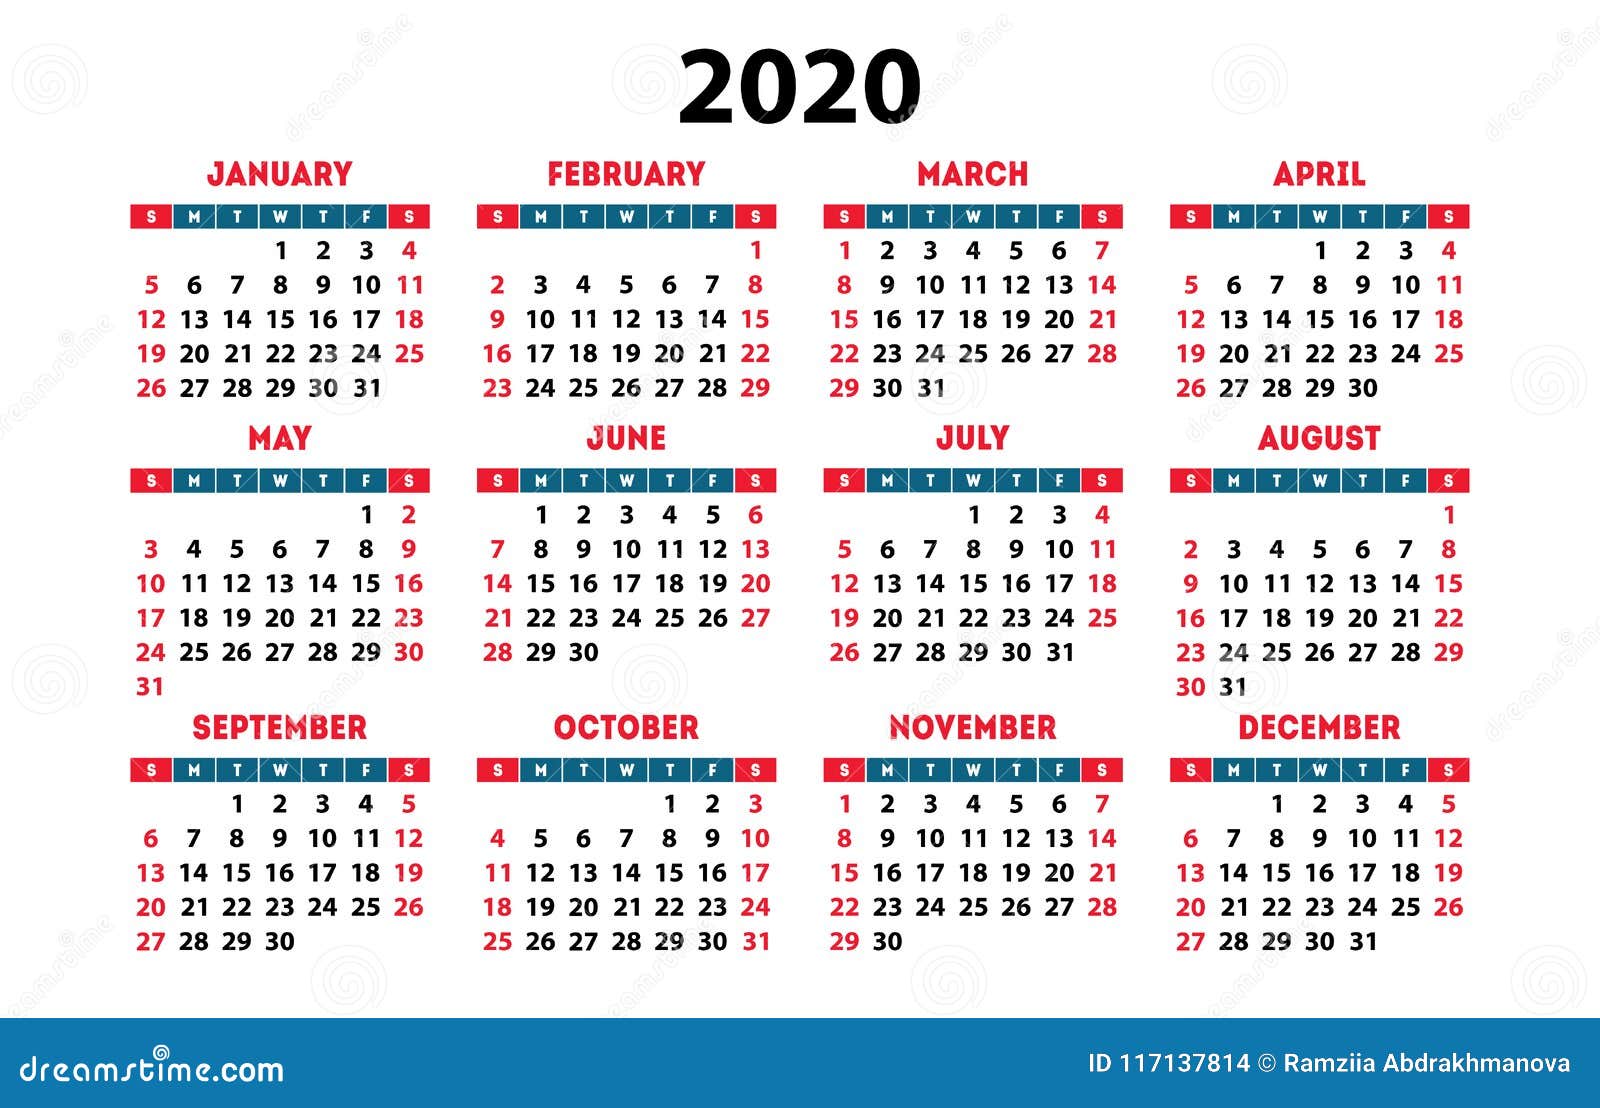 Descargar Calendario 20201300 x 917